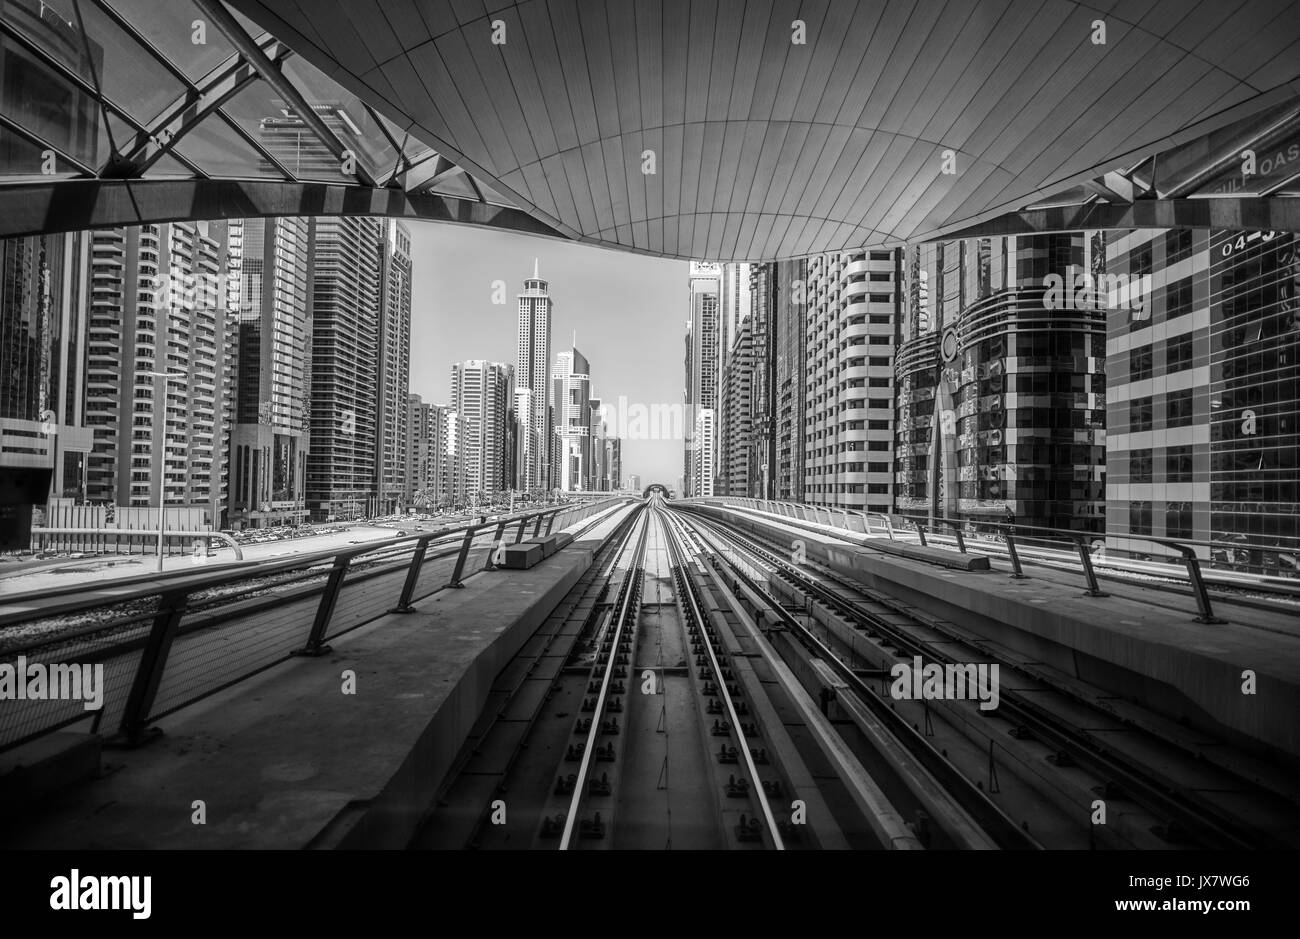 Le métro de Dubaï (Émirats arabes unis) Banque D'Images